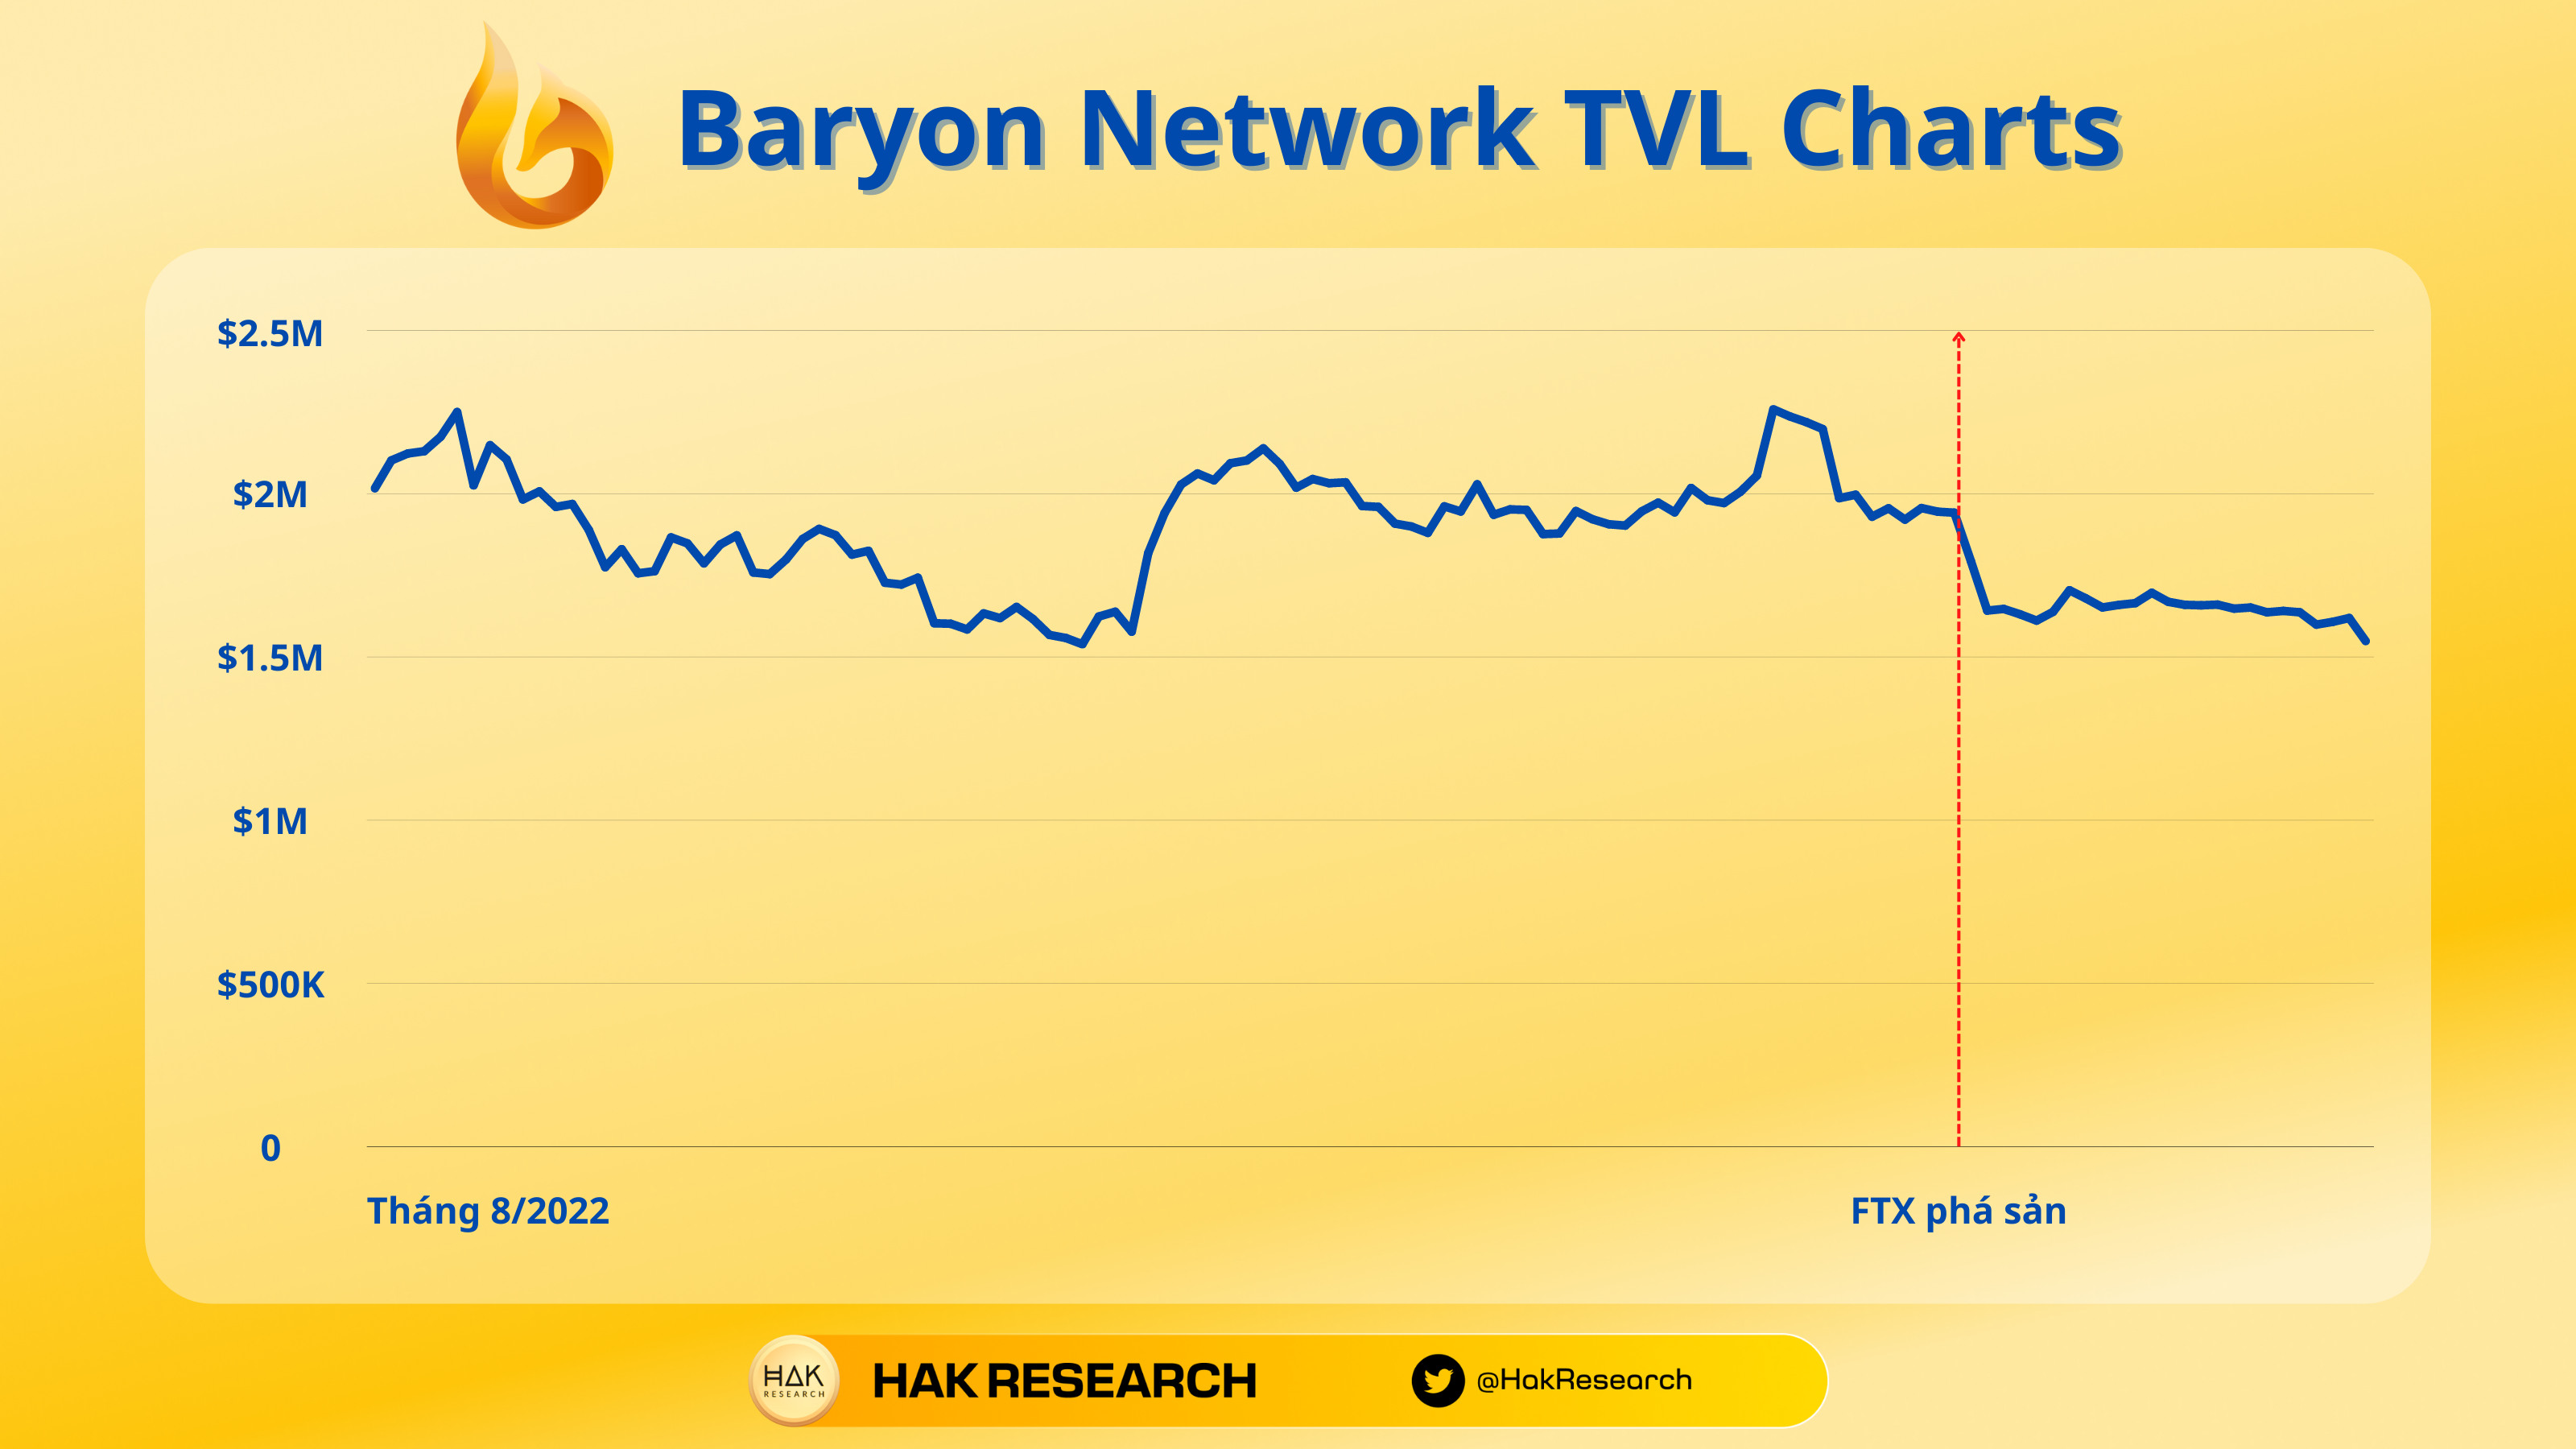 TVL Baryon Network